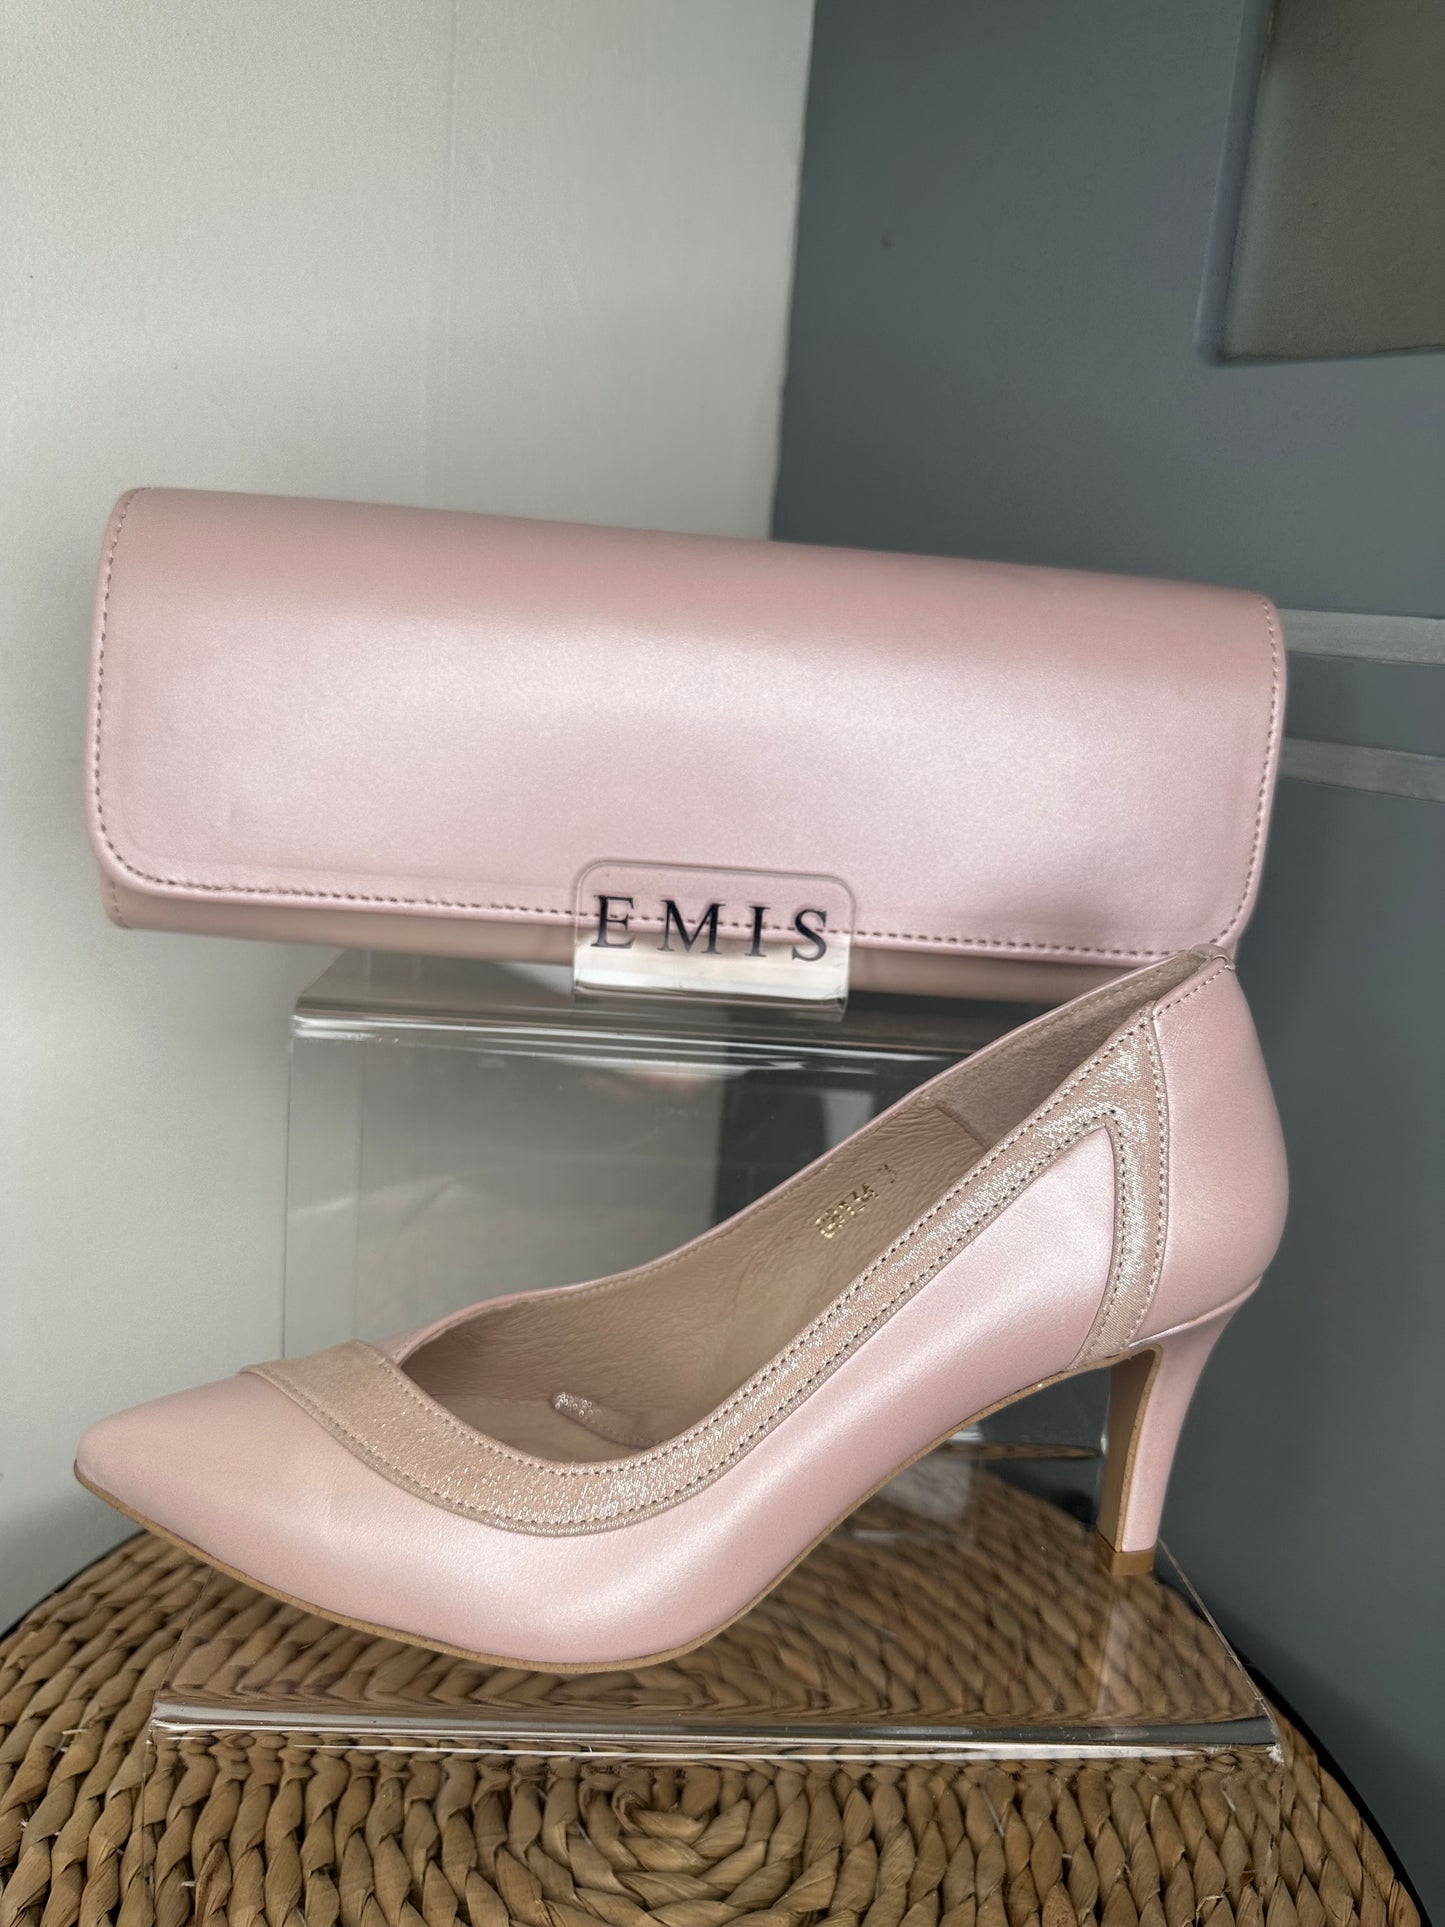 Emis - Matching Blush Pink Bag With Pink Shimmer Trim